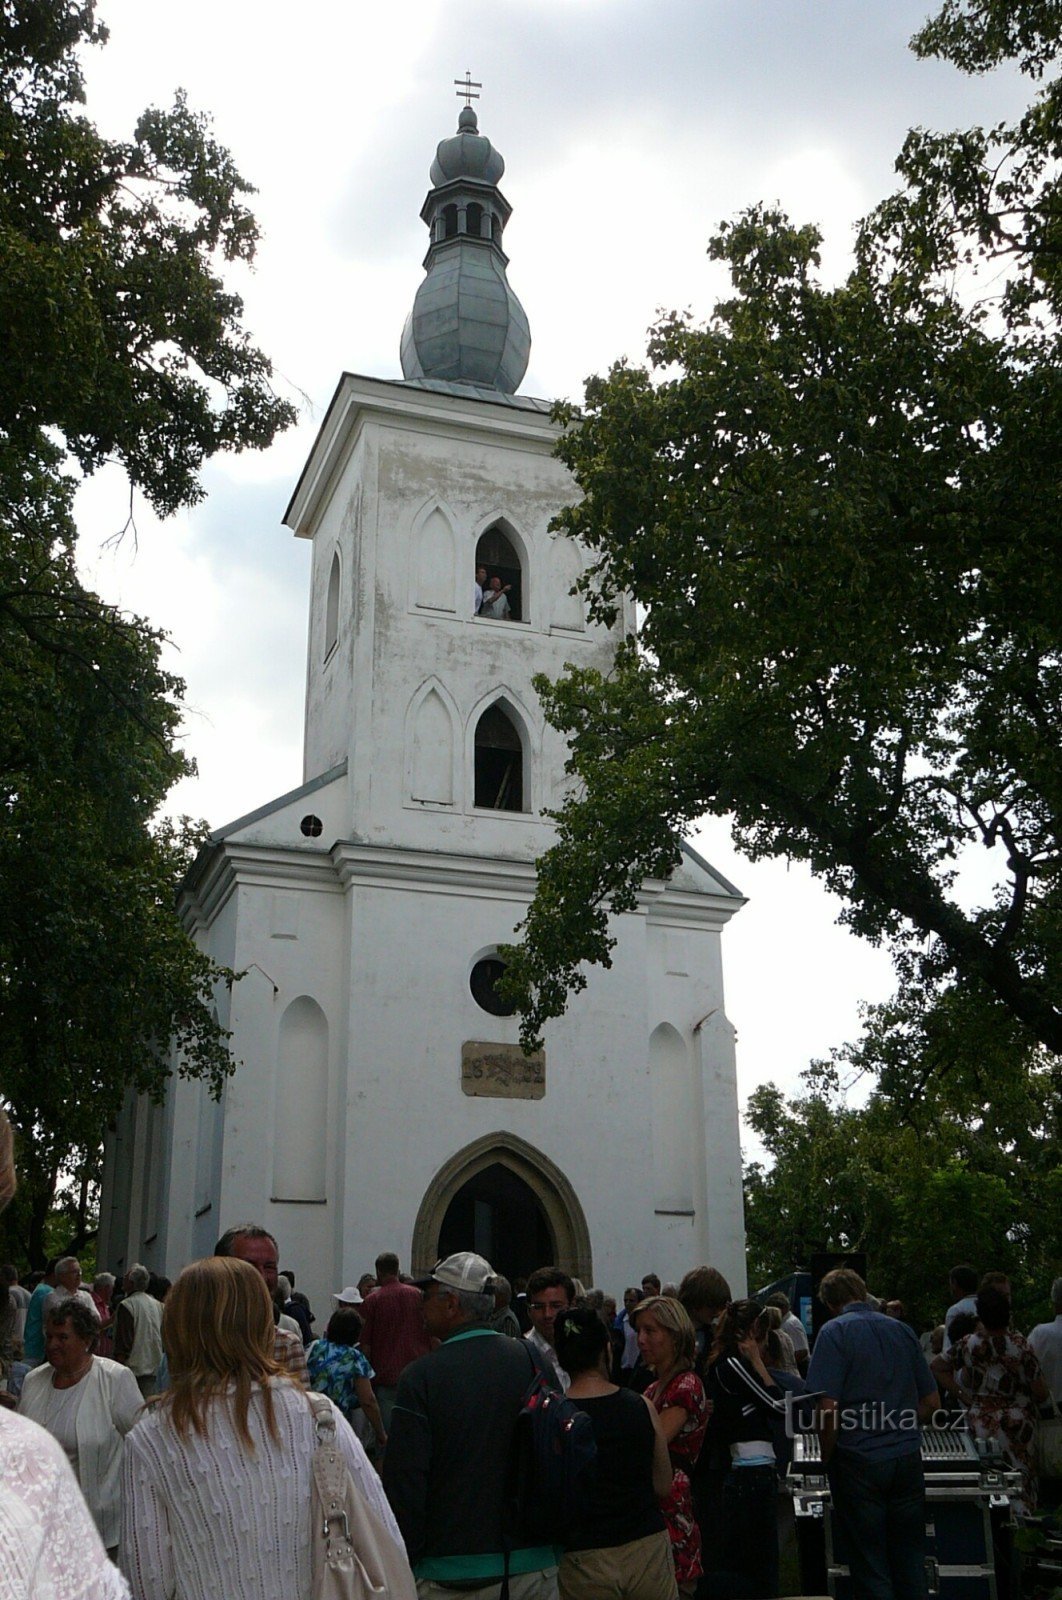 Wzgórze przy kościele św. Jakuba nad Ivančicemi to pielgrzymka pełna ludzi